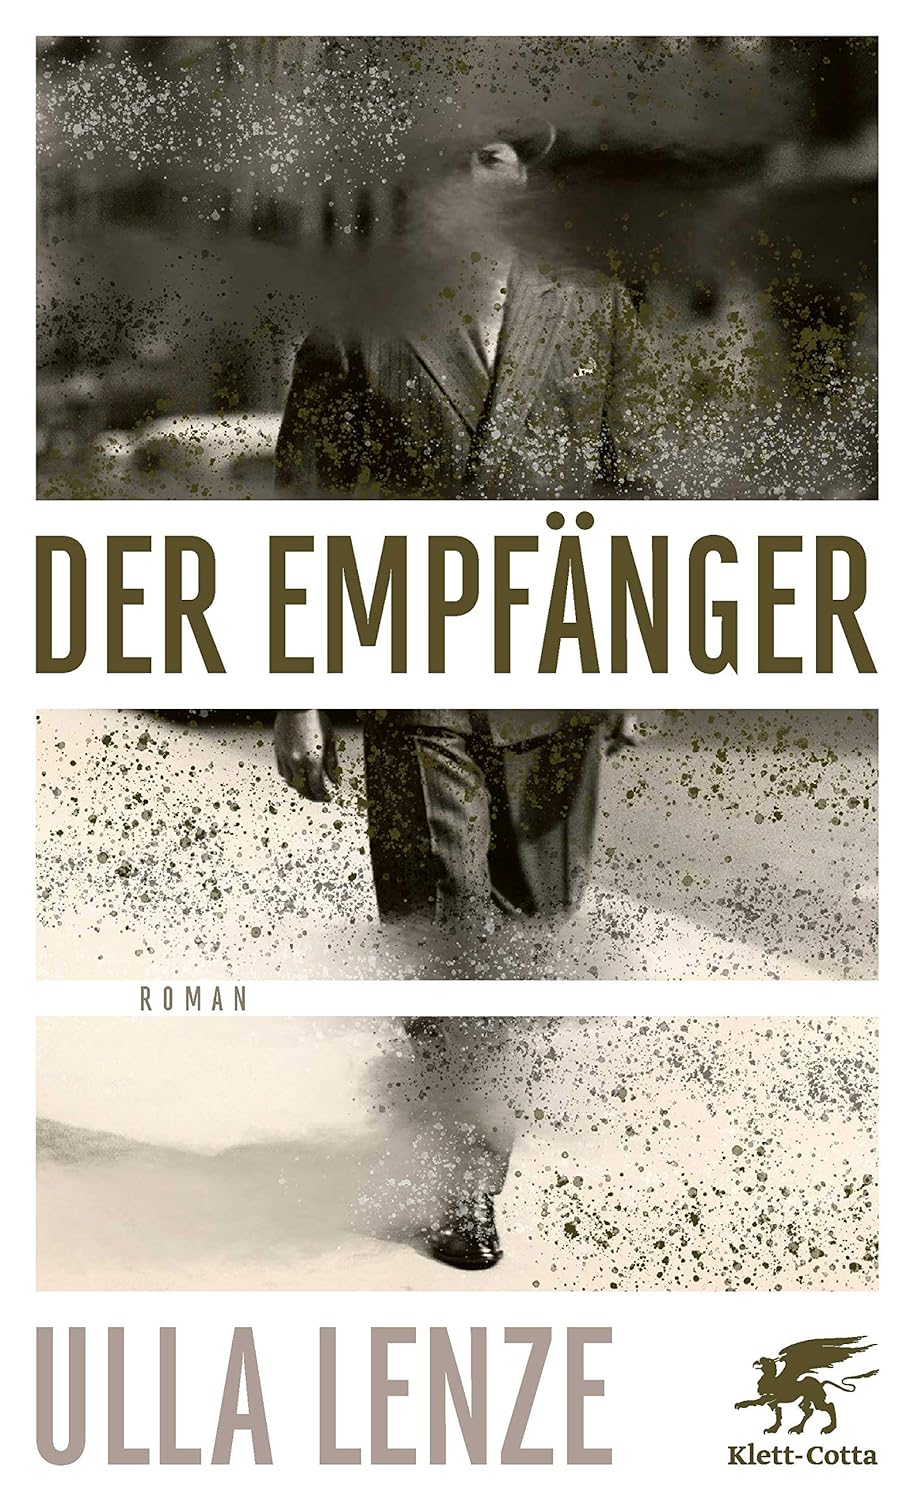 Ulla Lenze: Der Empfänger (deutsch language)